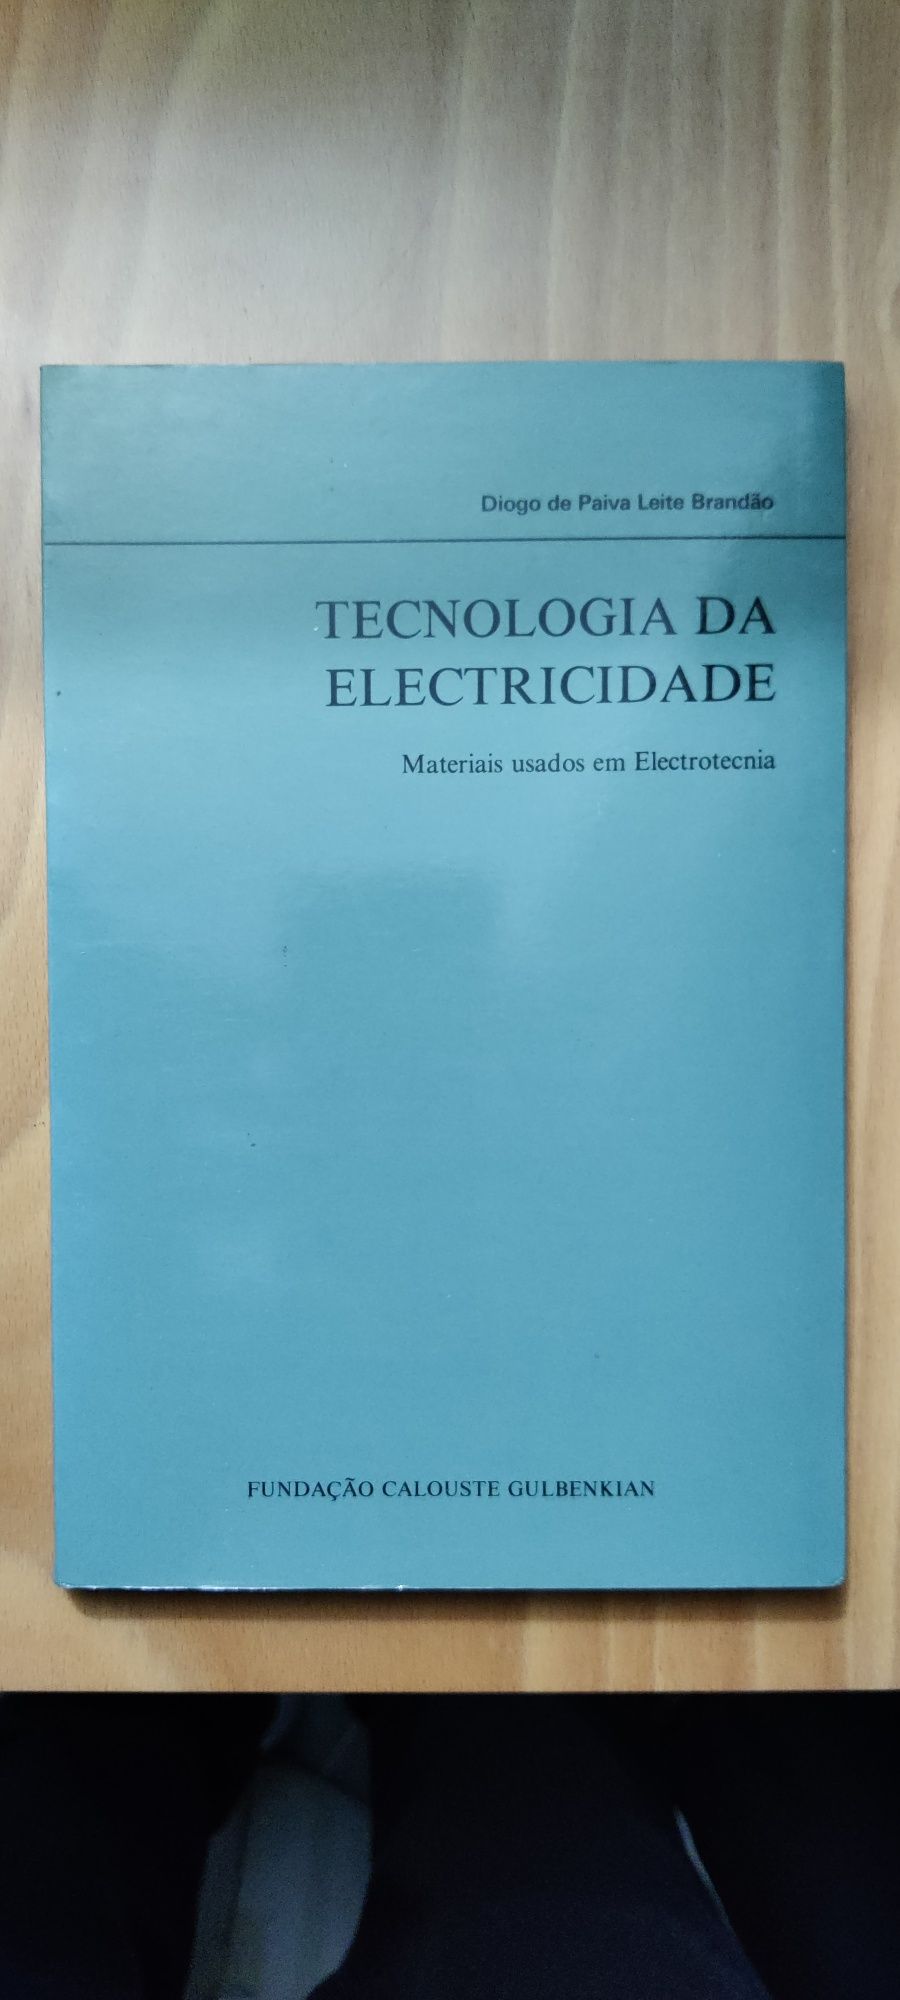 Tecnologia da electricidade
- materiais usados em electrotecnica